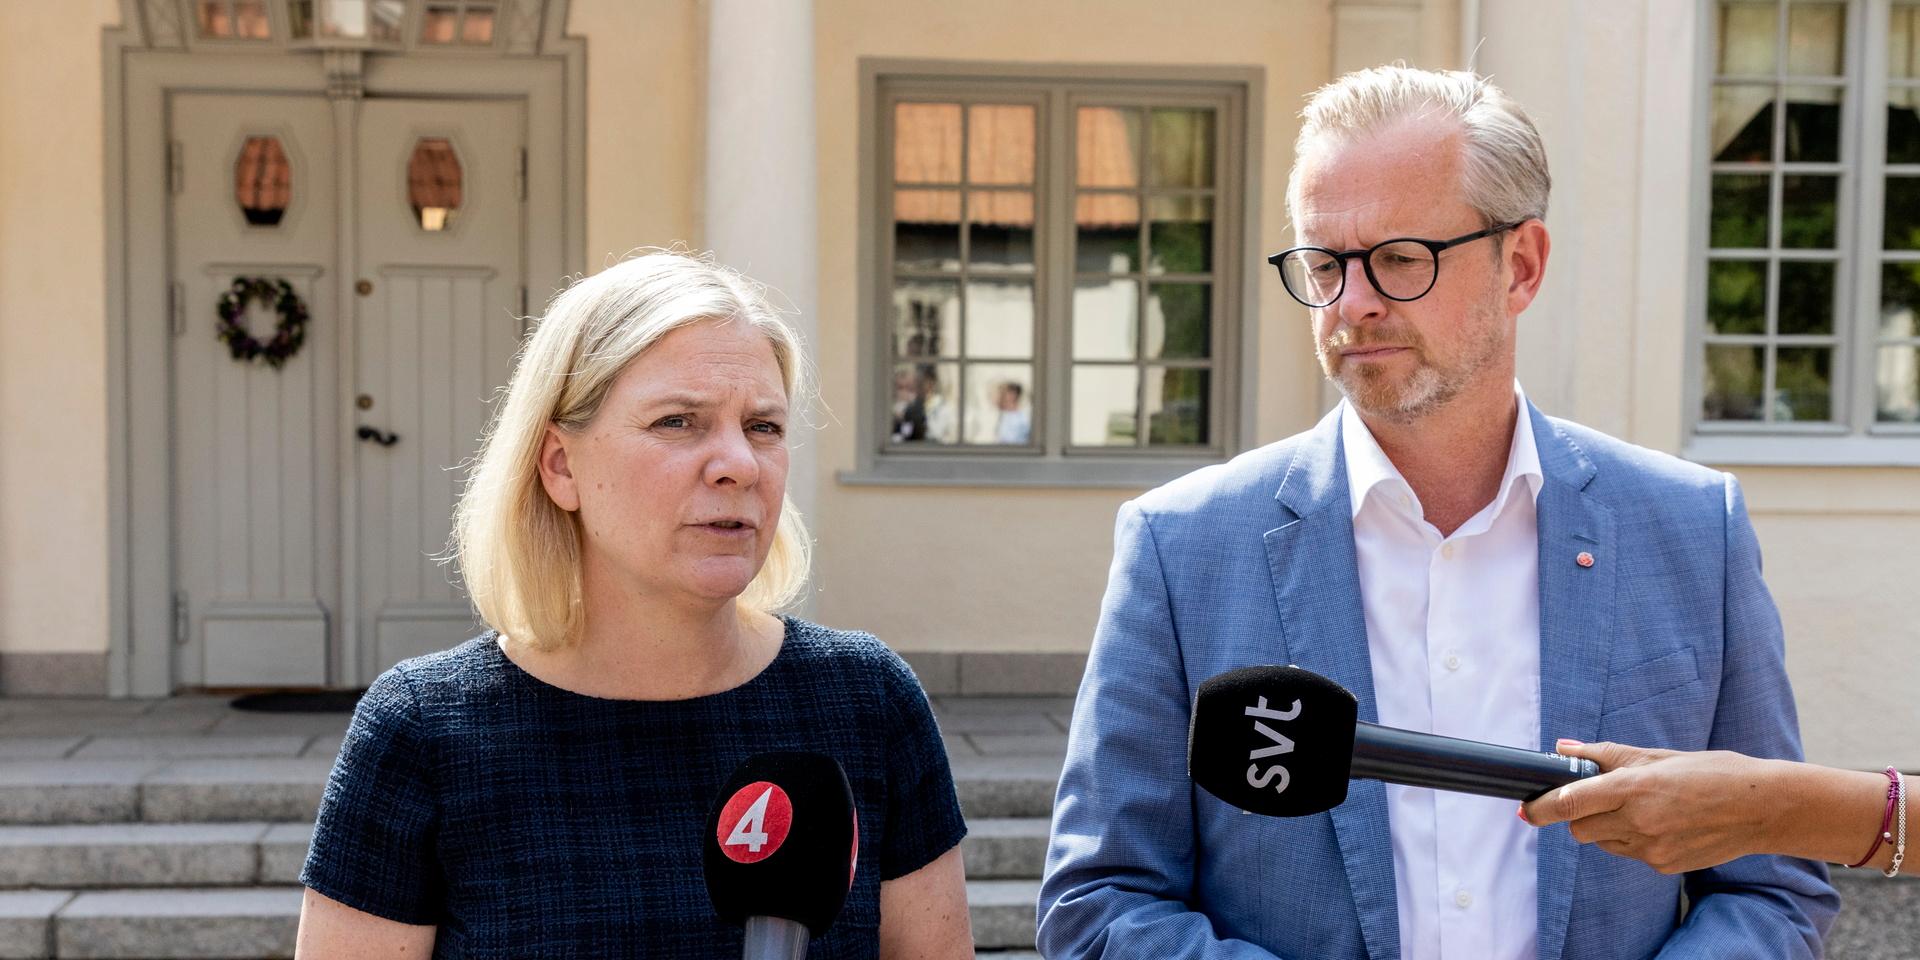 Socialdemokraternas partiledare statsminister Magdalena Andersson säger att partiet agerat ”omedelbart” efter granskningen genom att ta ekonomichefen ur tjänst.